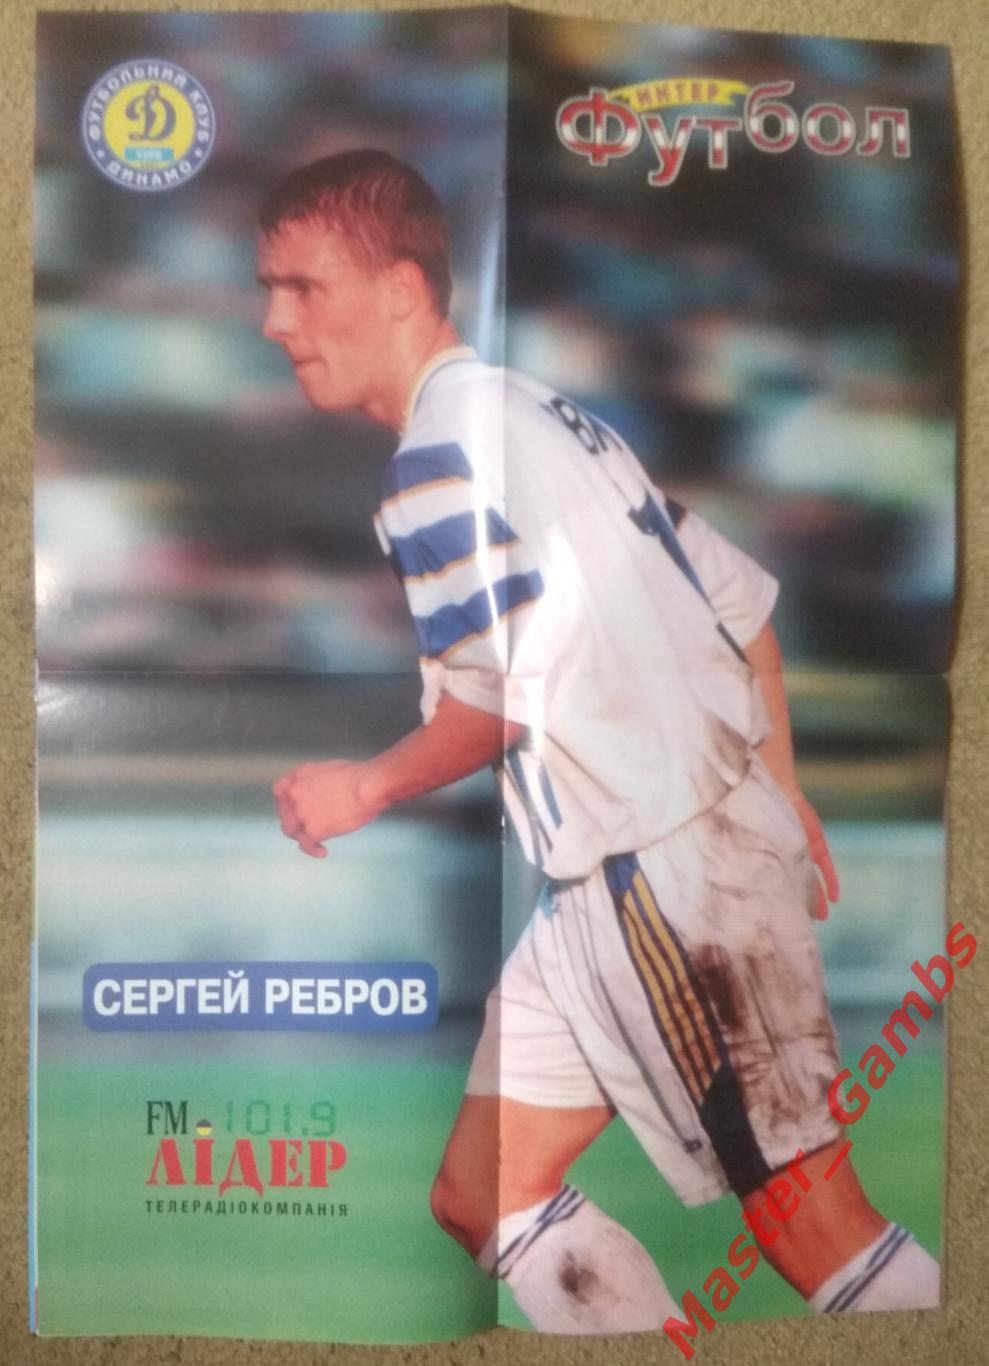 Журнал Футбол интер # 3 (7) май 1998 (Сергей Ребров) 2